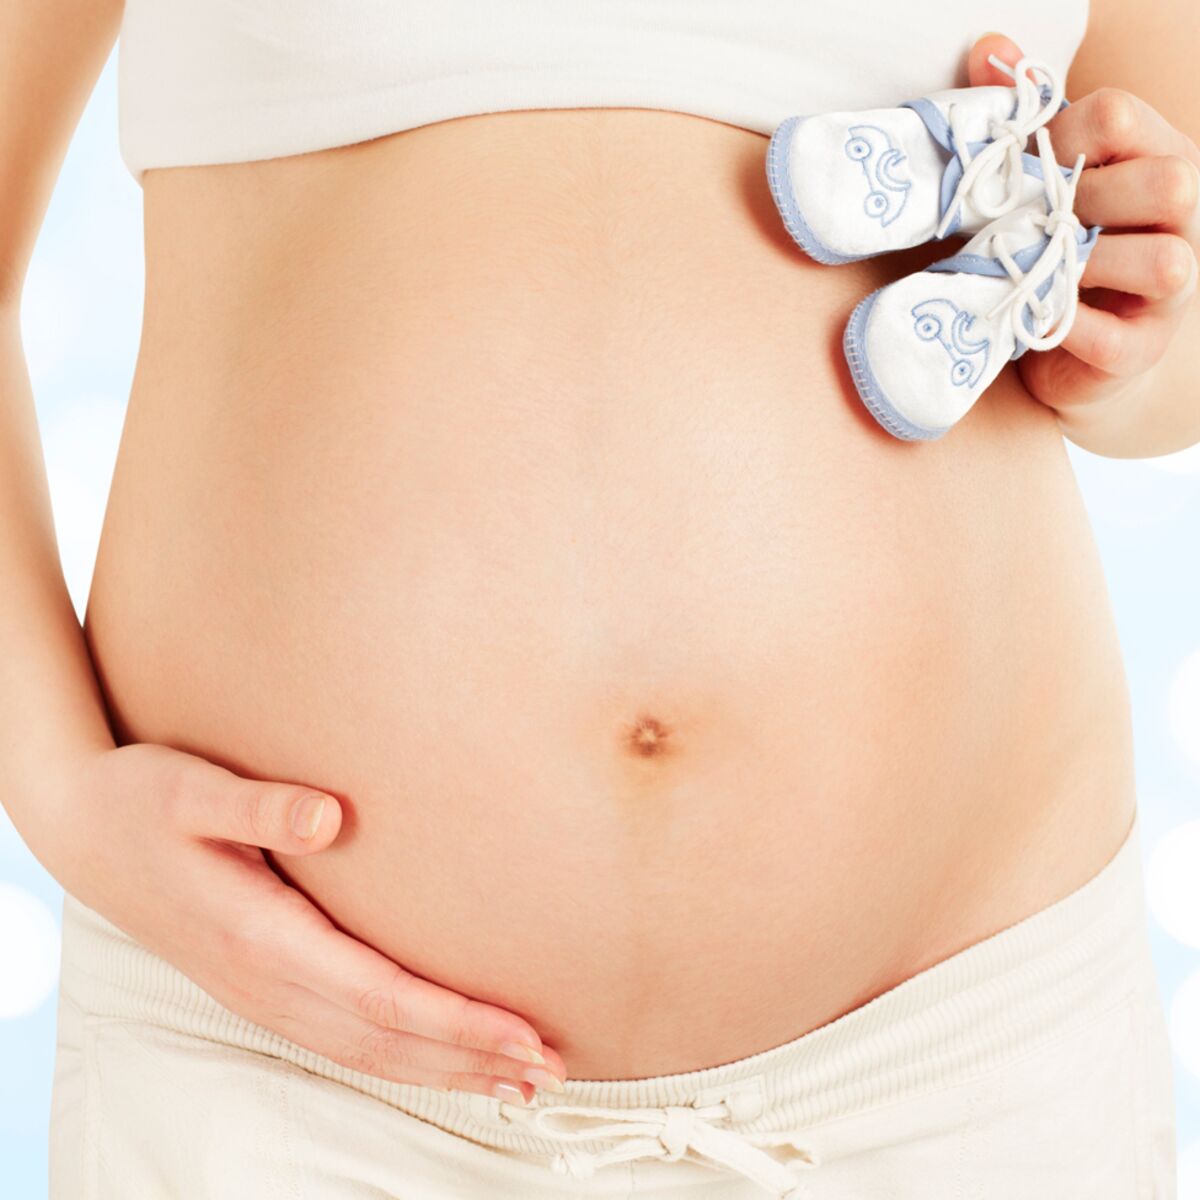 Modèle de mini bassin de démonstration d'accouchement avec foetus